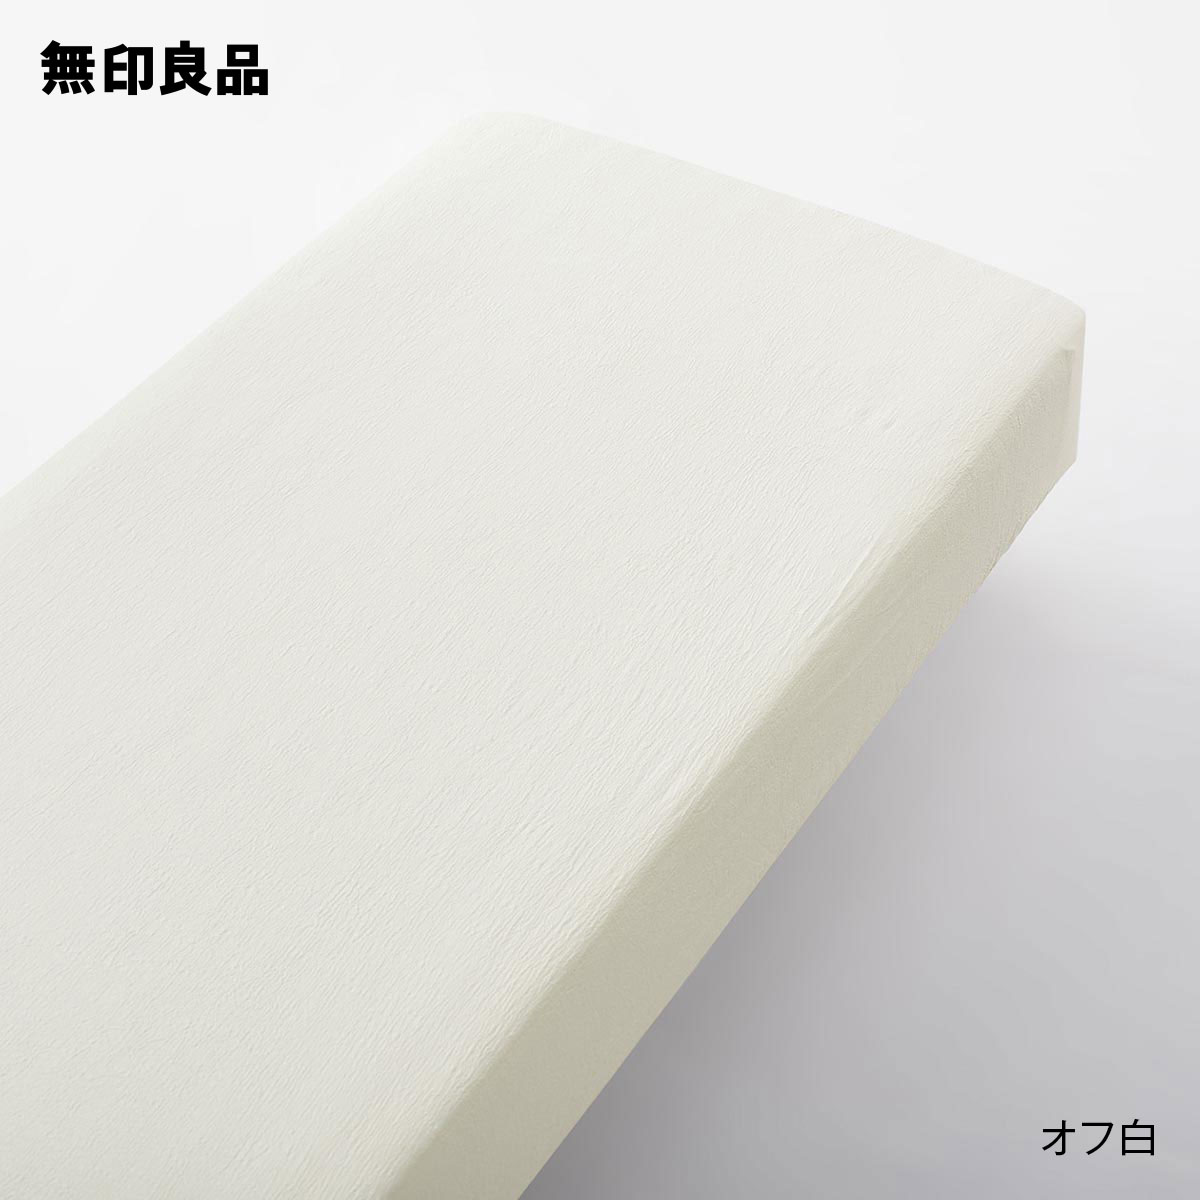 無印良品の綿強撚クレープ織ボックスシーツ・セミダブル 120×200×18〜28cm用(布団・寝具)